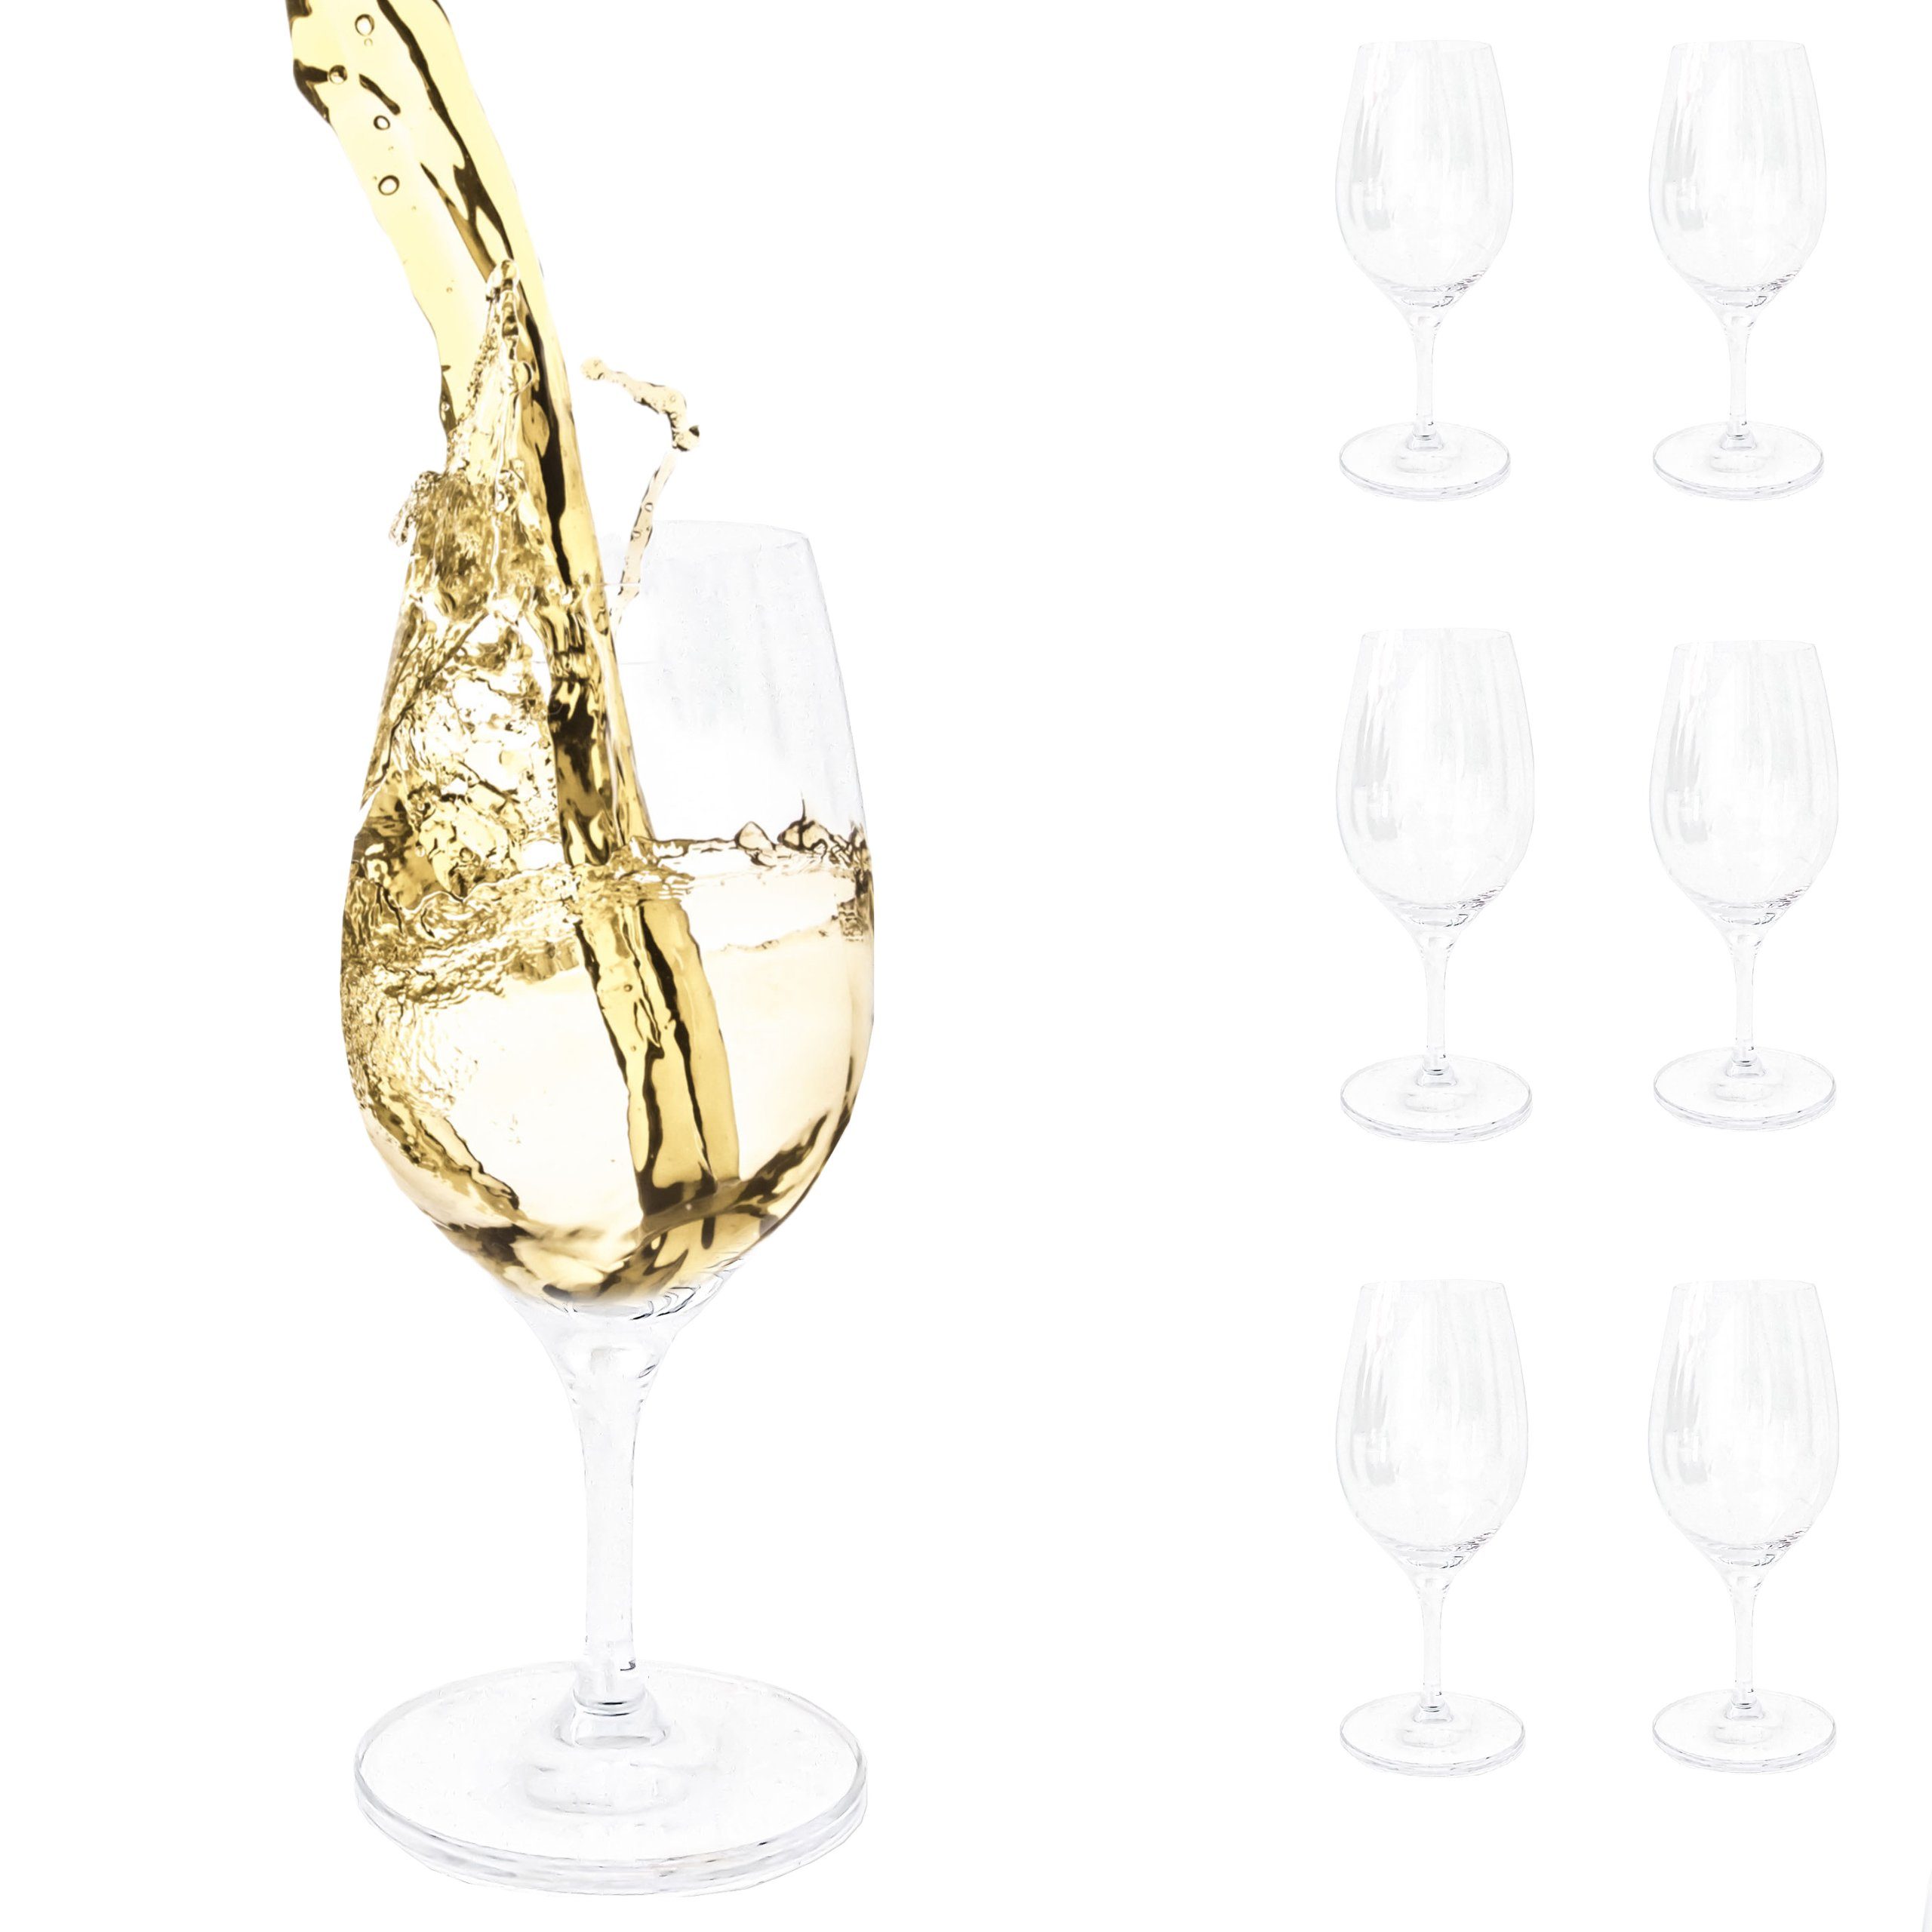 PassionMade Weißweinglas Бокалы для белого вина set 6 Spiegelau Wein glas 1079, Kristallglas, Spiegelau Бокалы для белого вина 6er Set